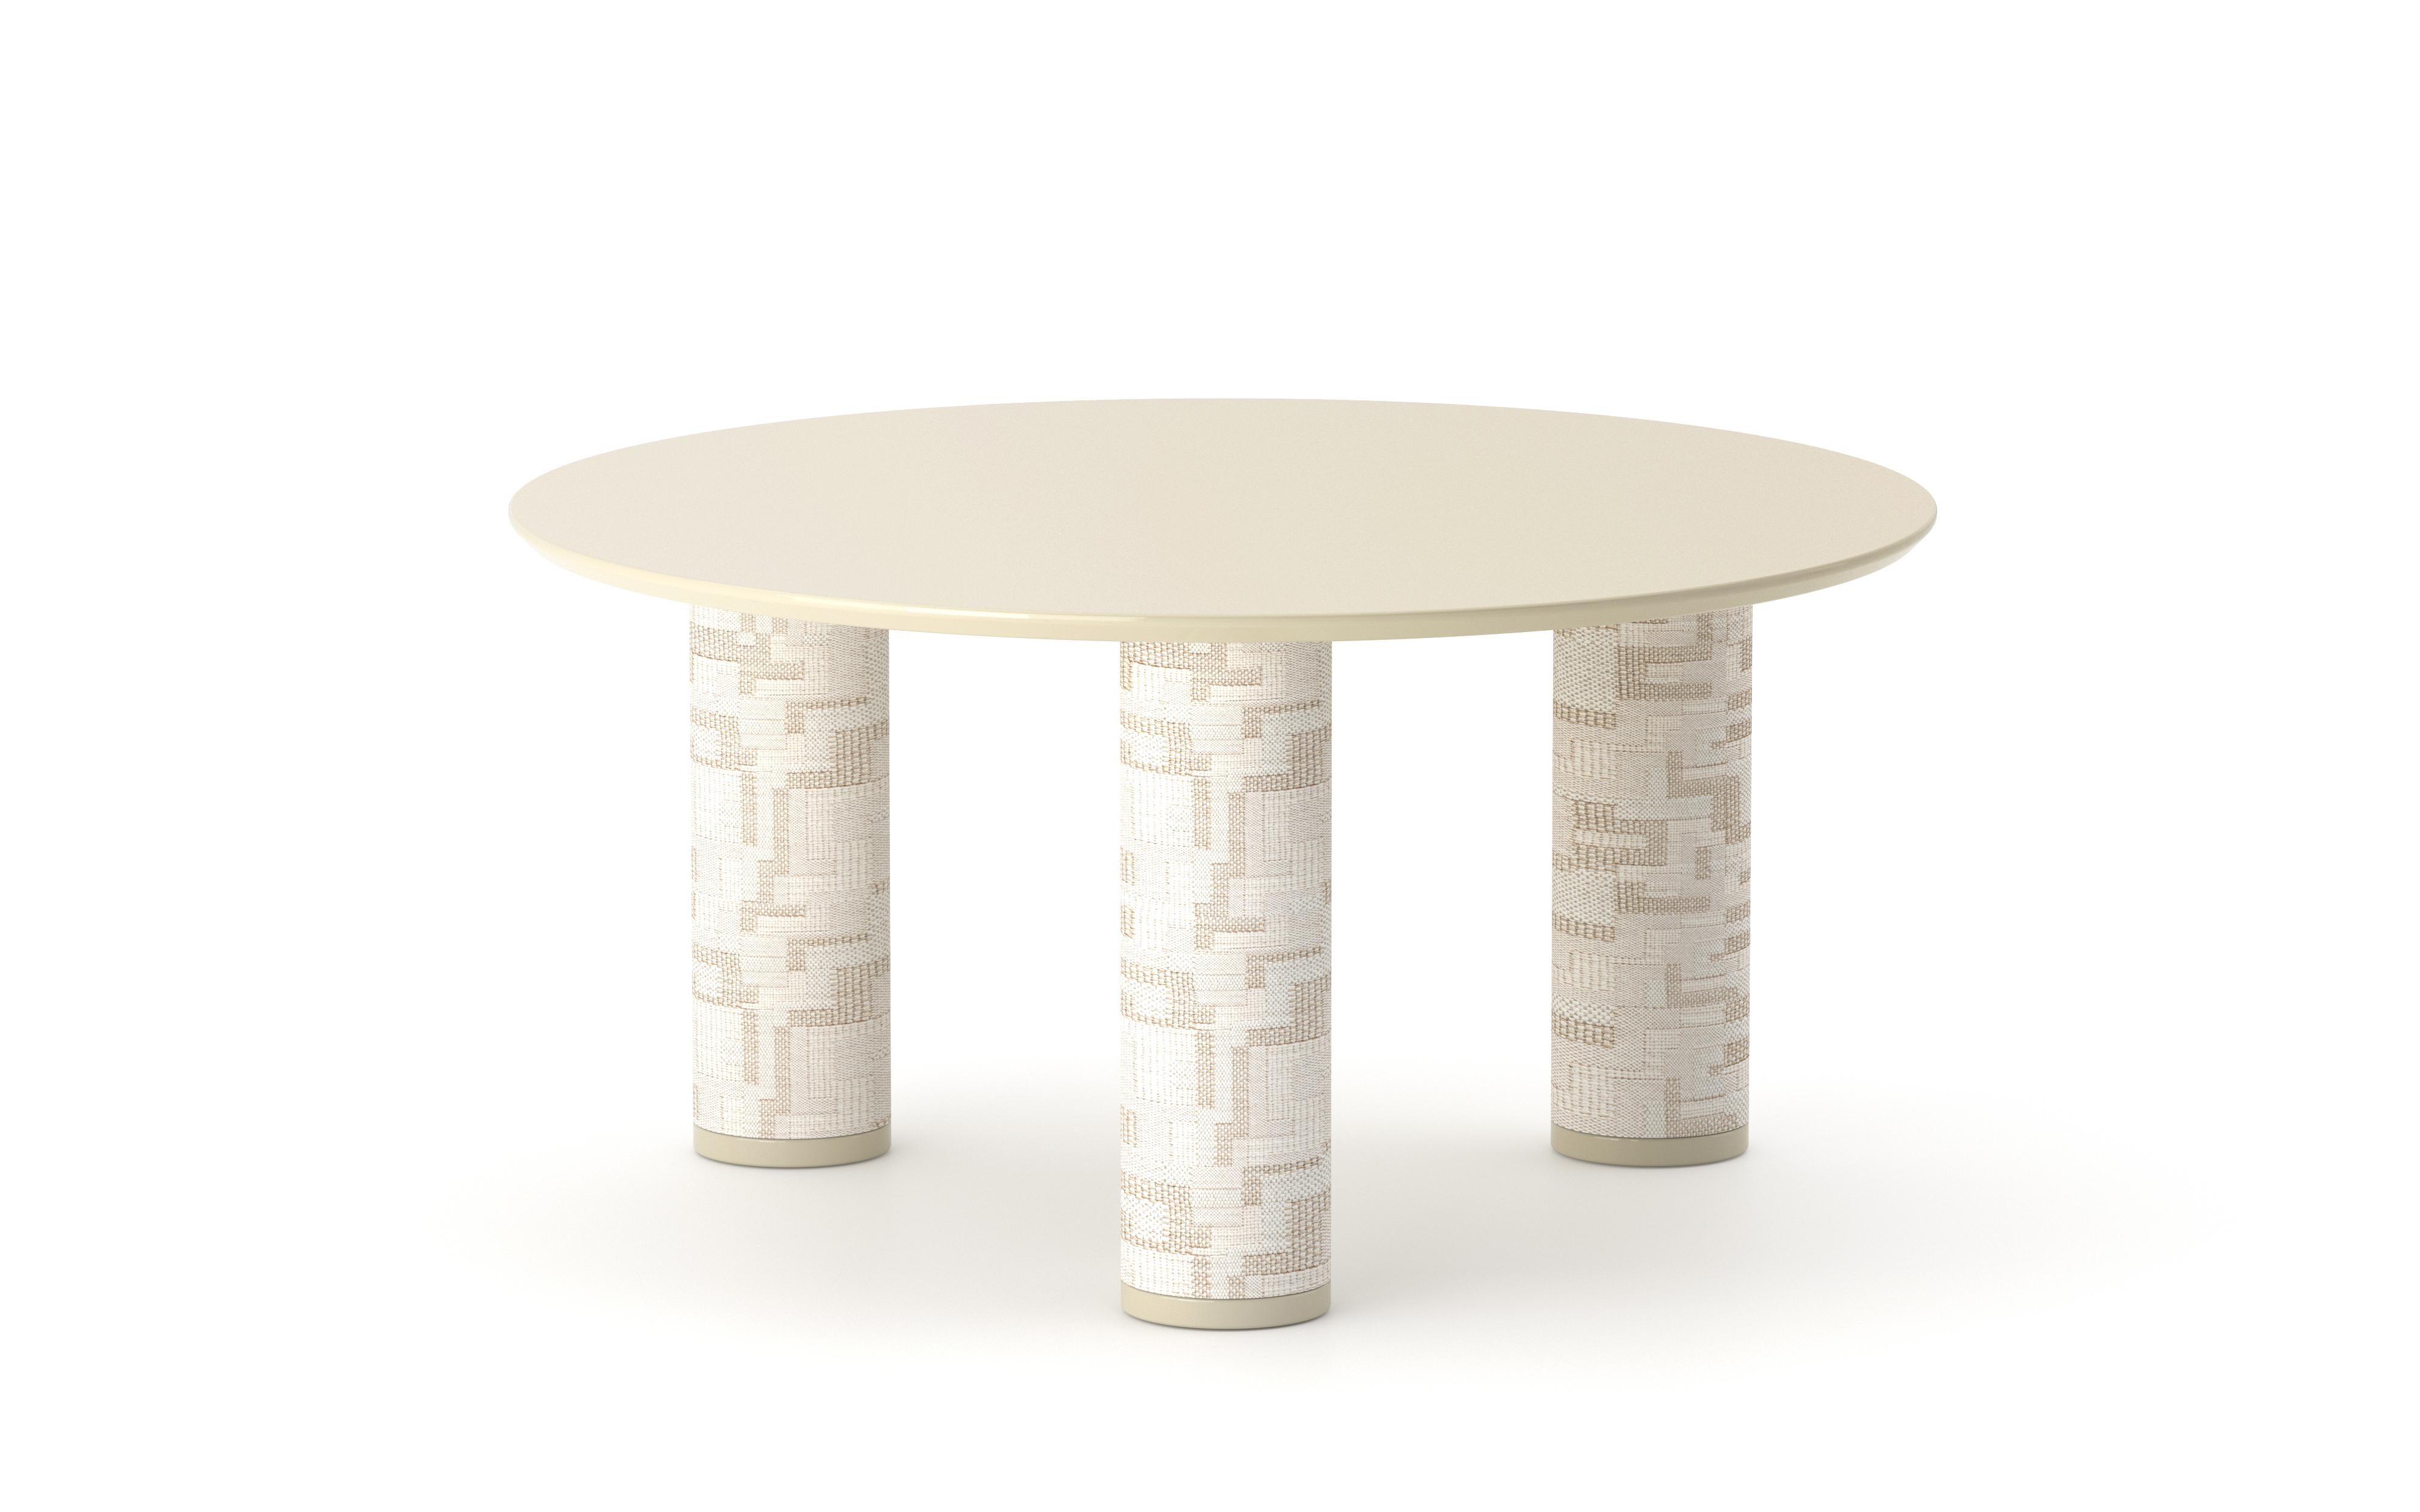 UMA Round 70 ist ein niedriger Tisch aus der gleichnamigen Kollektion, die von Ludovica+Roberto Palomba für P + C Edizioni im Frühjahr 2022 entworfen wurde.
Die runde Harzplatte von UMA Round 70 setzt den Designakzent auf die zylindrischen